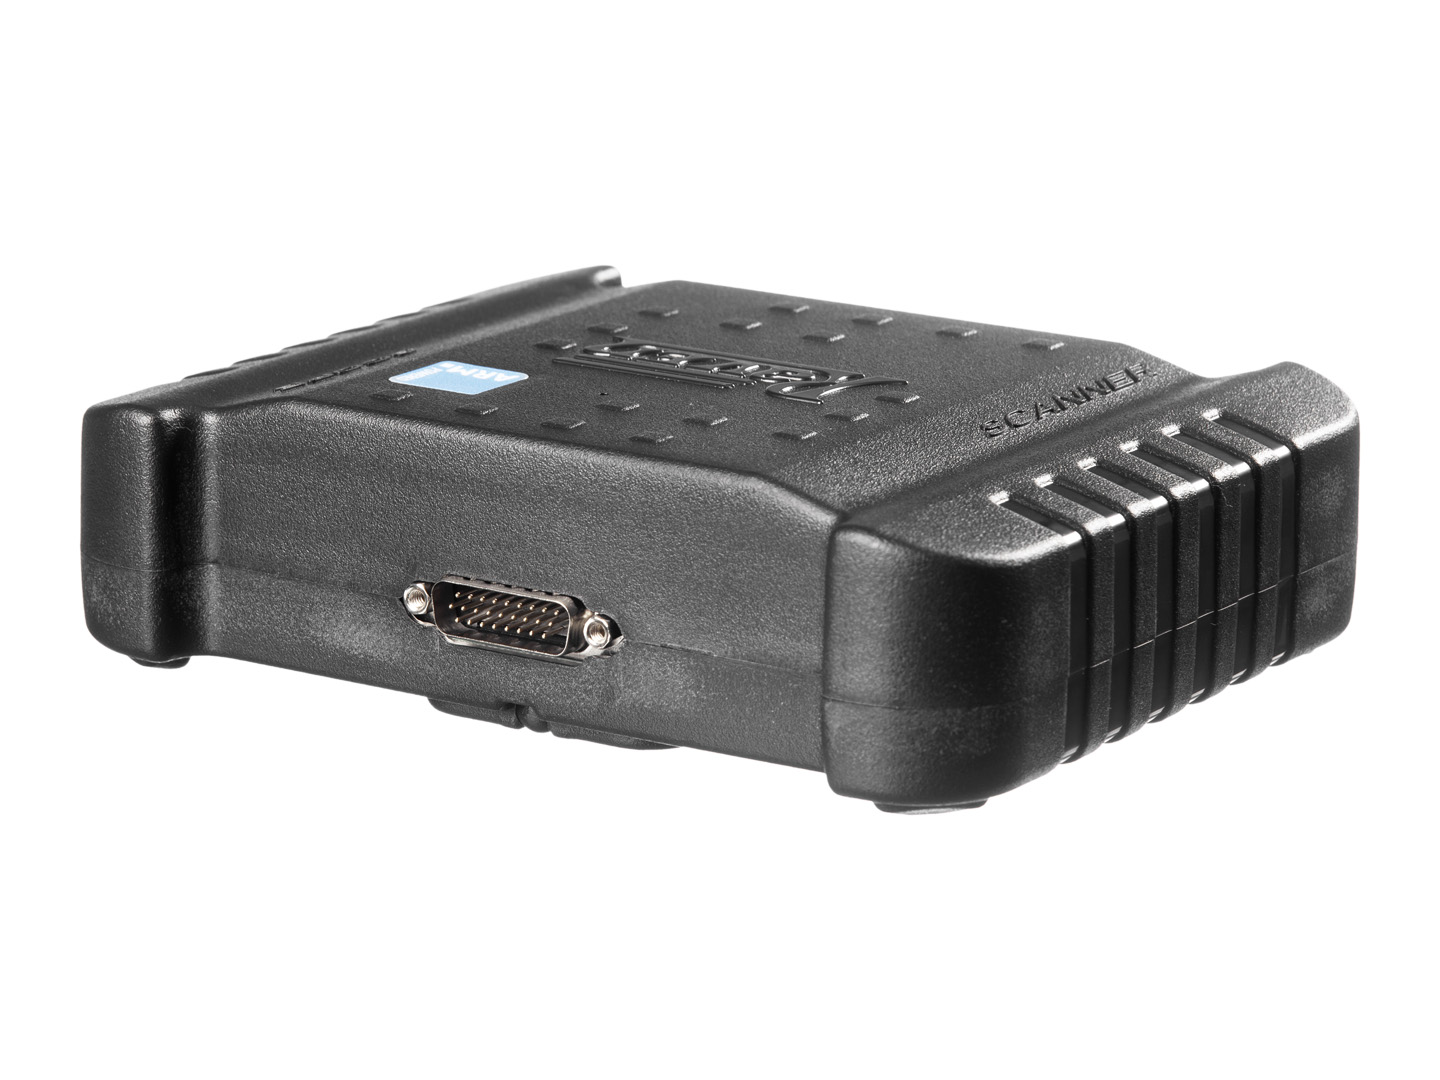 Produto Raven 108902 - Kit de Upgrade do Scanner 3 para Scanner 3 Scope (transforma 108800 / 108850 em 108900 e 108801 / 108851 em 108901). O proprietário necessita enviar apenas o módulo do Scanner 3 para a Raven (diretamente ou através do seu distribuidor, custo do envio por conta do proprietário ou distribuidor).<ul><li>Composição:</li><li>01 - Carcaça do módulo de comunicação sem fio (via Bluetooth) com osciloscópio de 3 canais</li><li>03 - Cabos principais do osciloscópio (108900-13D)</li><li>01 - Cabo de aterramento de 50 cm para uso com osciloscópio (108900-15D)</li><li>03 - Pontas de prova vermelhas (PRT8582)</li><li>03 - Pontas de agulha vermelhas (PRT8580)</li><li>03 - Pontas de agulha pretas (PRT8581)</li><li>03 - Garras jacaré pretas (PRT8579)</li><li>01 - Garra jacaré vermelha (PRT8634)*</li><li>01 - Pinça indutiva" com cabo flexível (108905)</li><li>01 - Pinça indutiva convencional (108906)</li><li>01 - Cabo para conexão das pinças indutivas 108905 e 108906 (108900-14D)</li><li>04 - "Cabos de vela Ferramenta" (PRT0366)</li><li>01 - Atenuador de sinal 10:1 (divide por 10 a tensão captada) para medições de tensão (até 800V)**</li><li>01 - Maleta plástica grande com nichos internos para os componentes do Scanner 3 e manual de instruções</li><li>*A partir do número de série 18448</li><li>**A partir do número de série 19101.</li></ul> - Elétrica